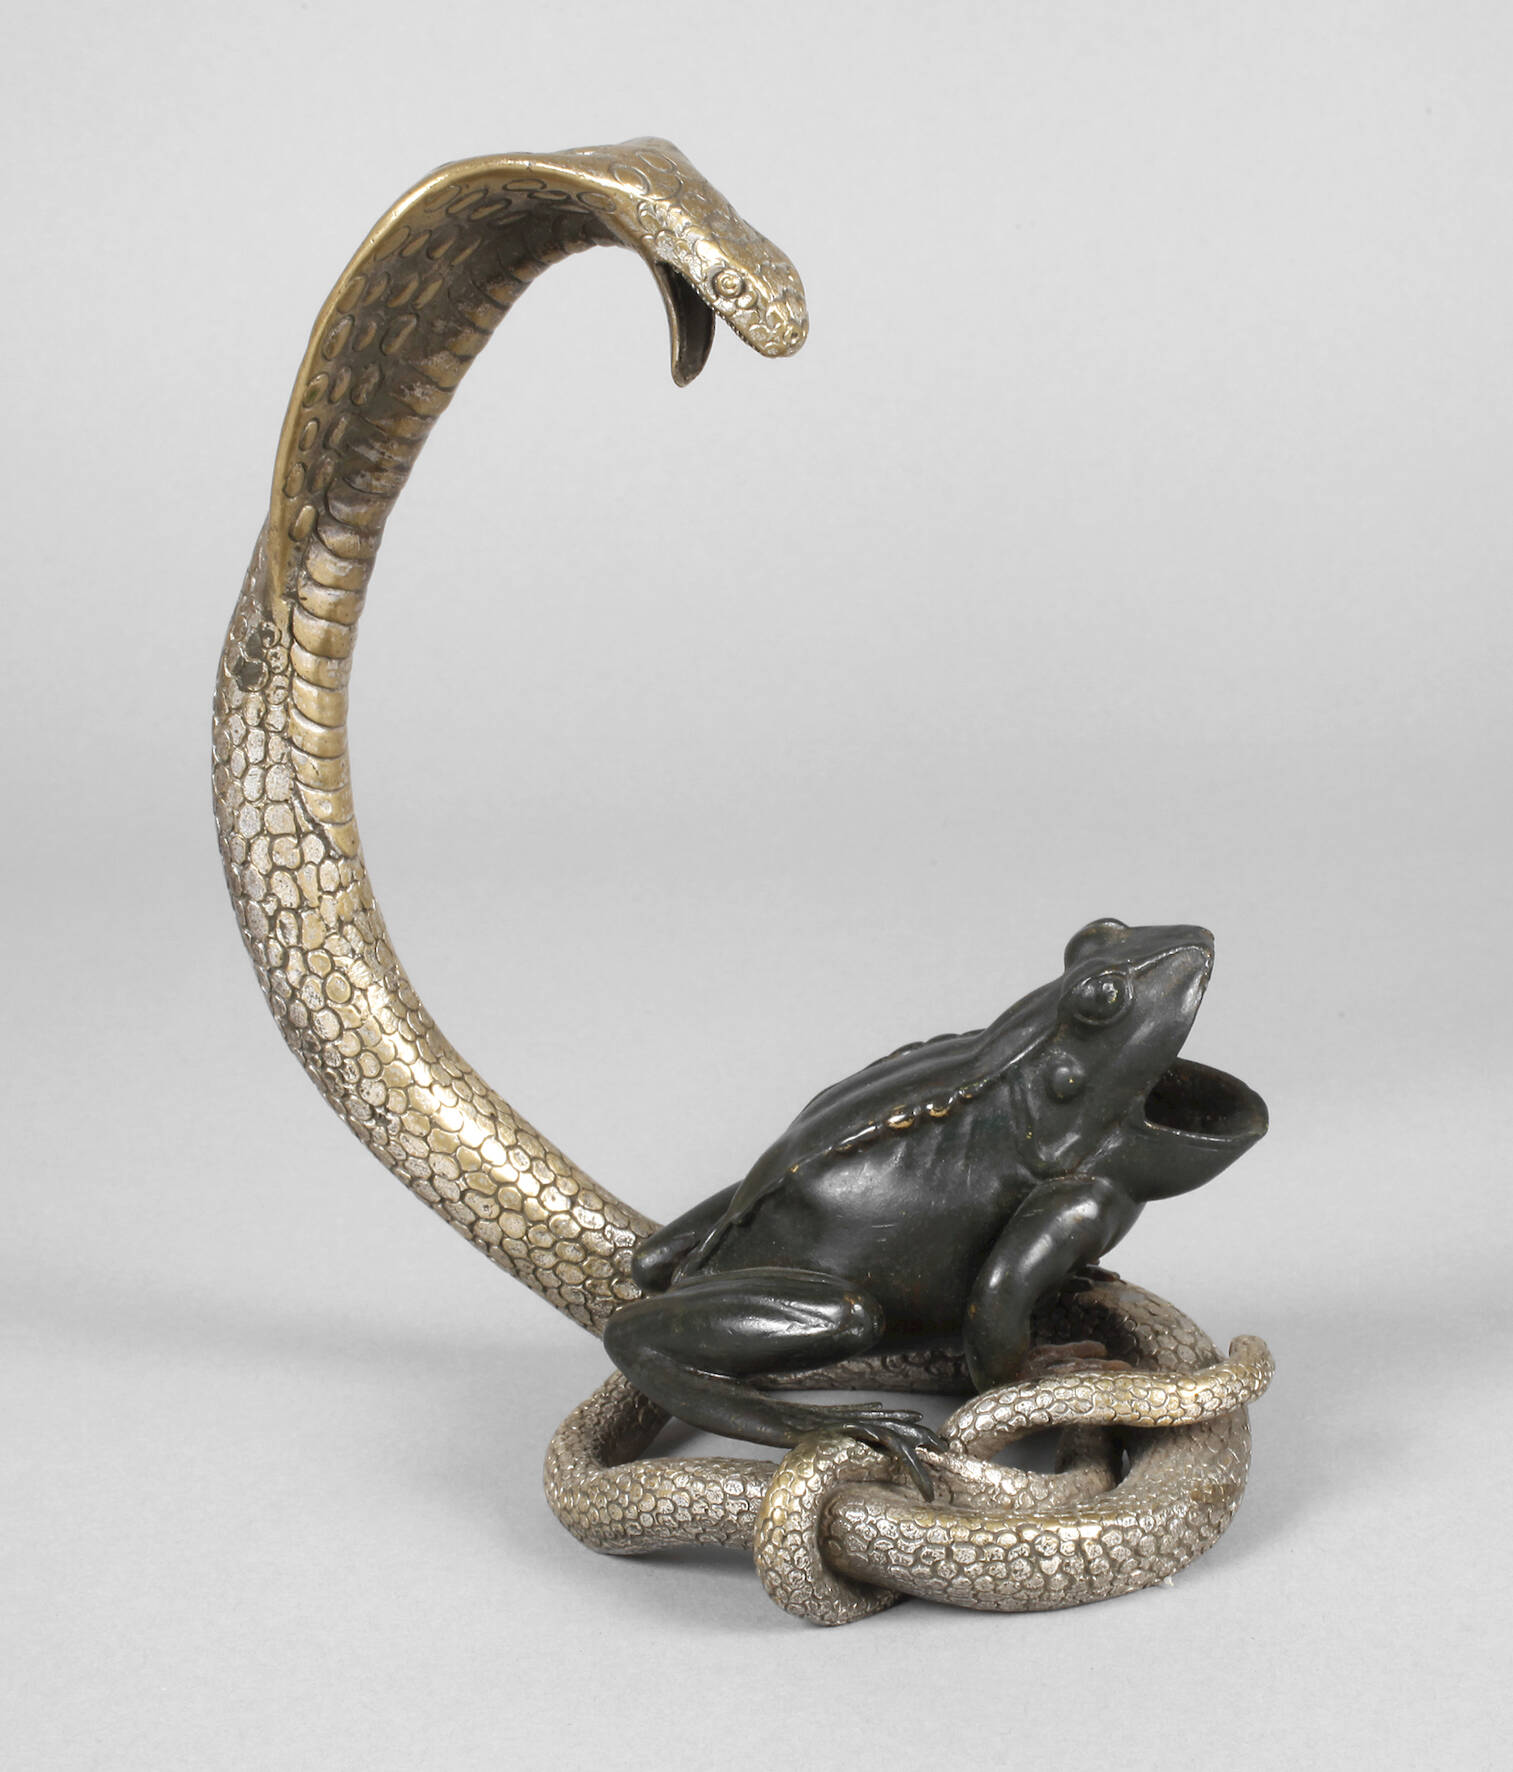 Bronzeplastik Schlange und Frosch